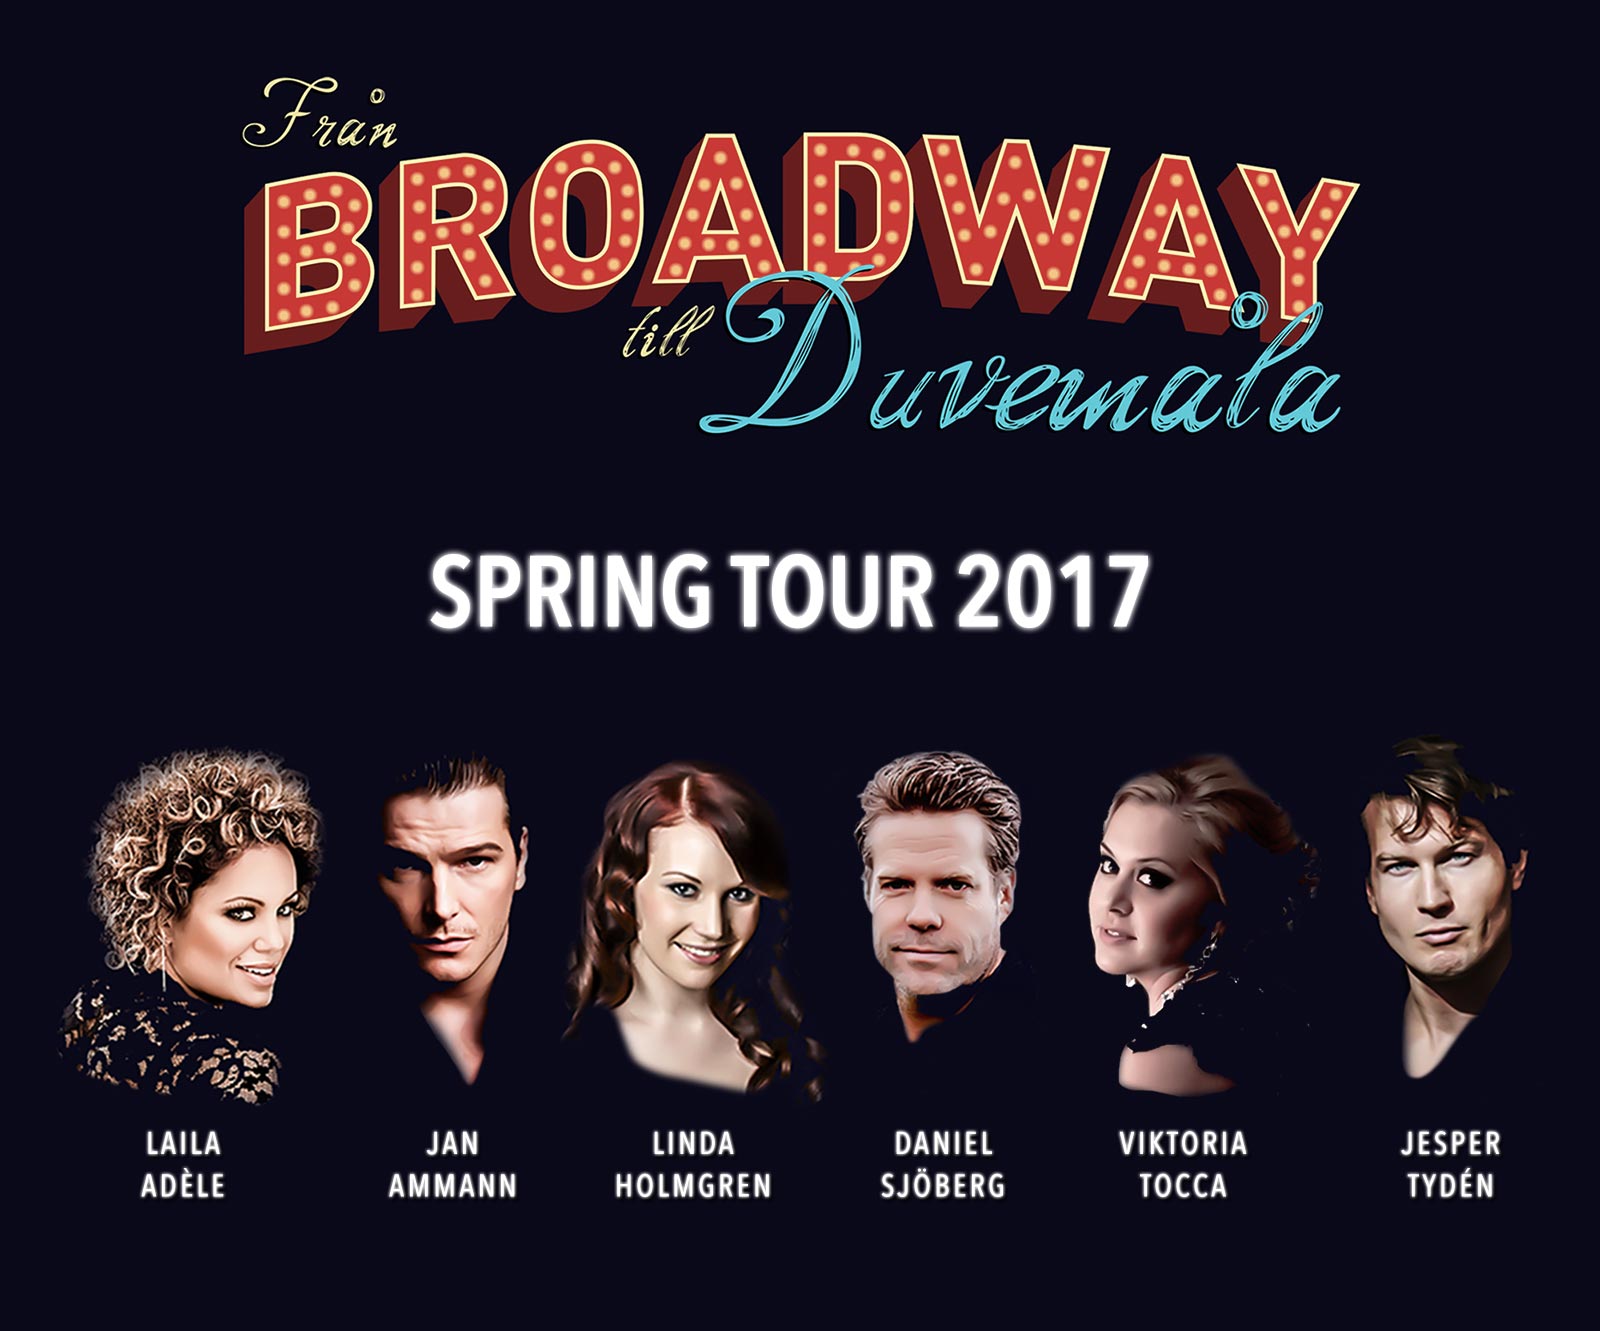 “Från Broadway till Duvemåla” spring tour confirmed